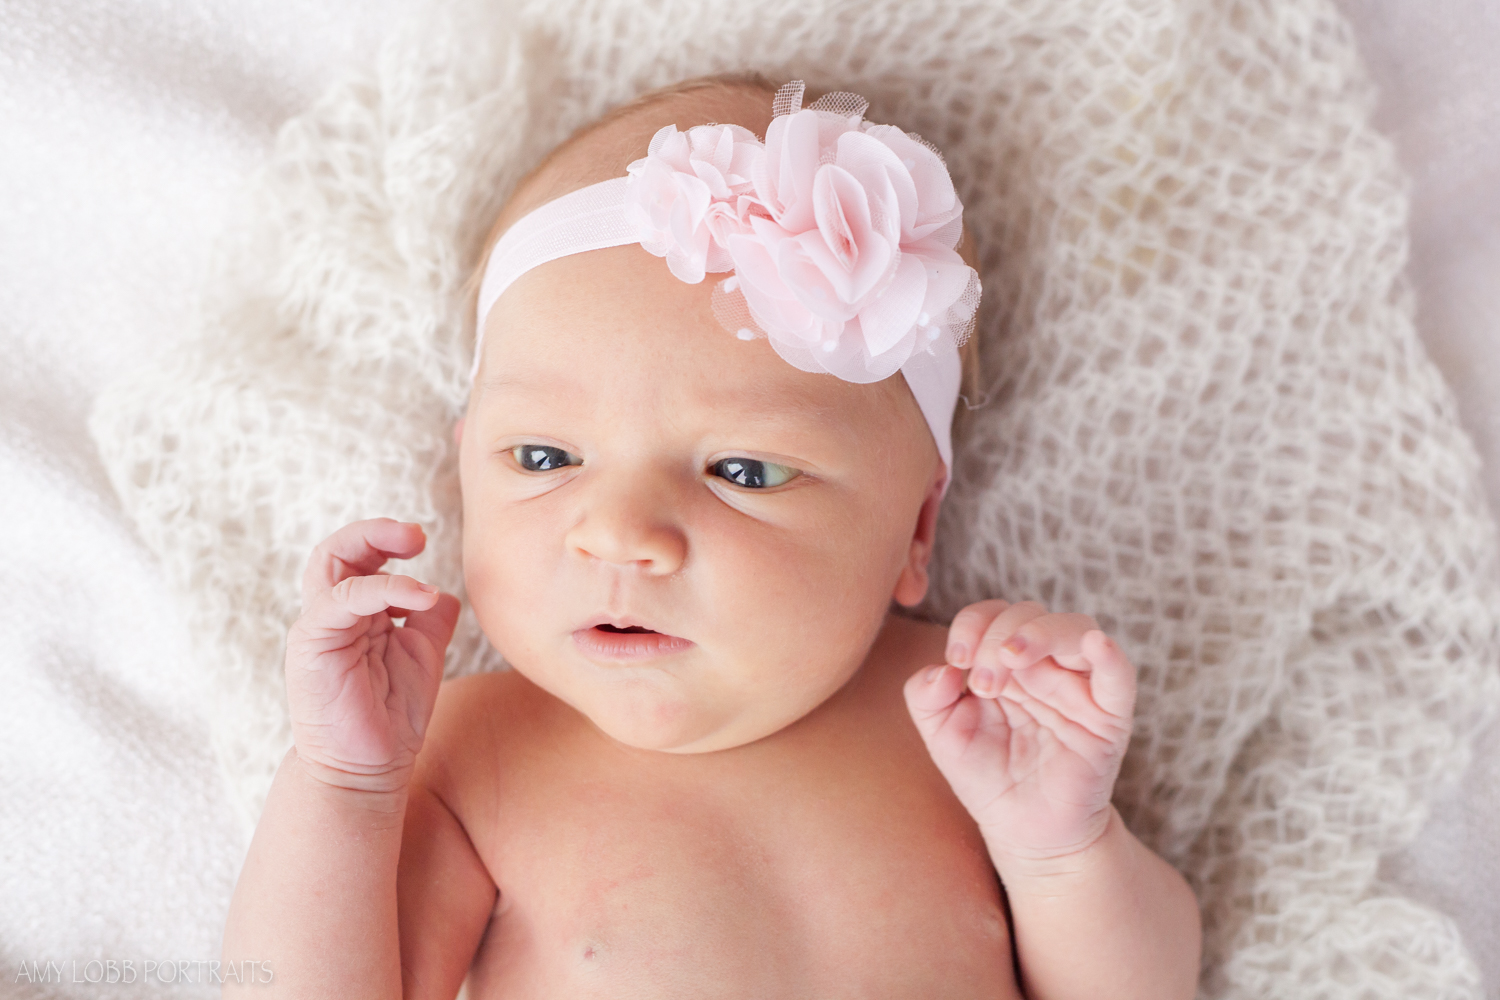 isabella-newborn-by-amy-lobb-10.jpg